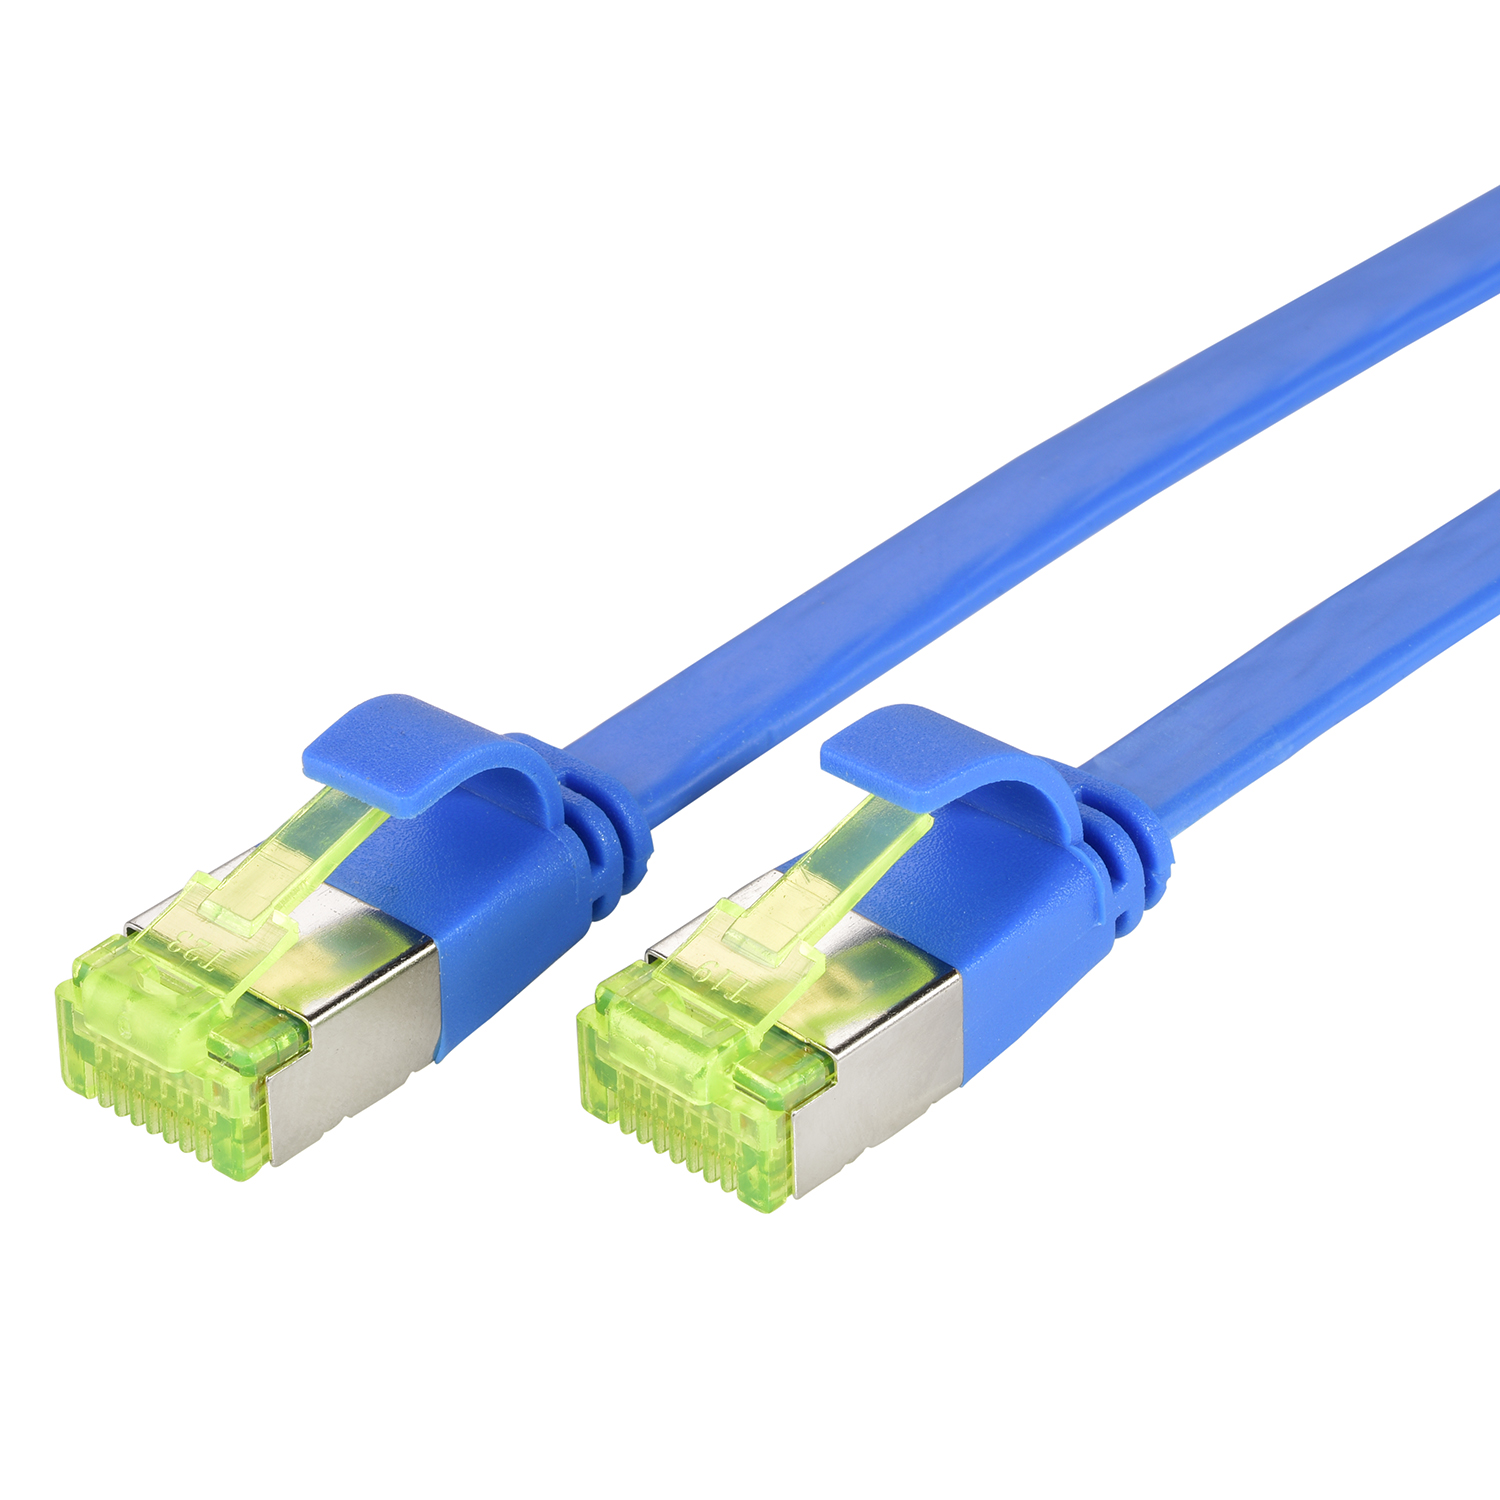 50m m GBit, Netzwerkkabel, Flachkabel blau, 50 10 / TPFNET U/FTP Patchkabel